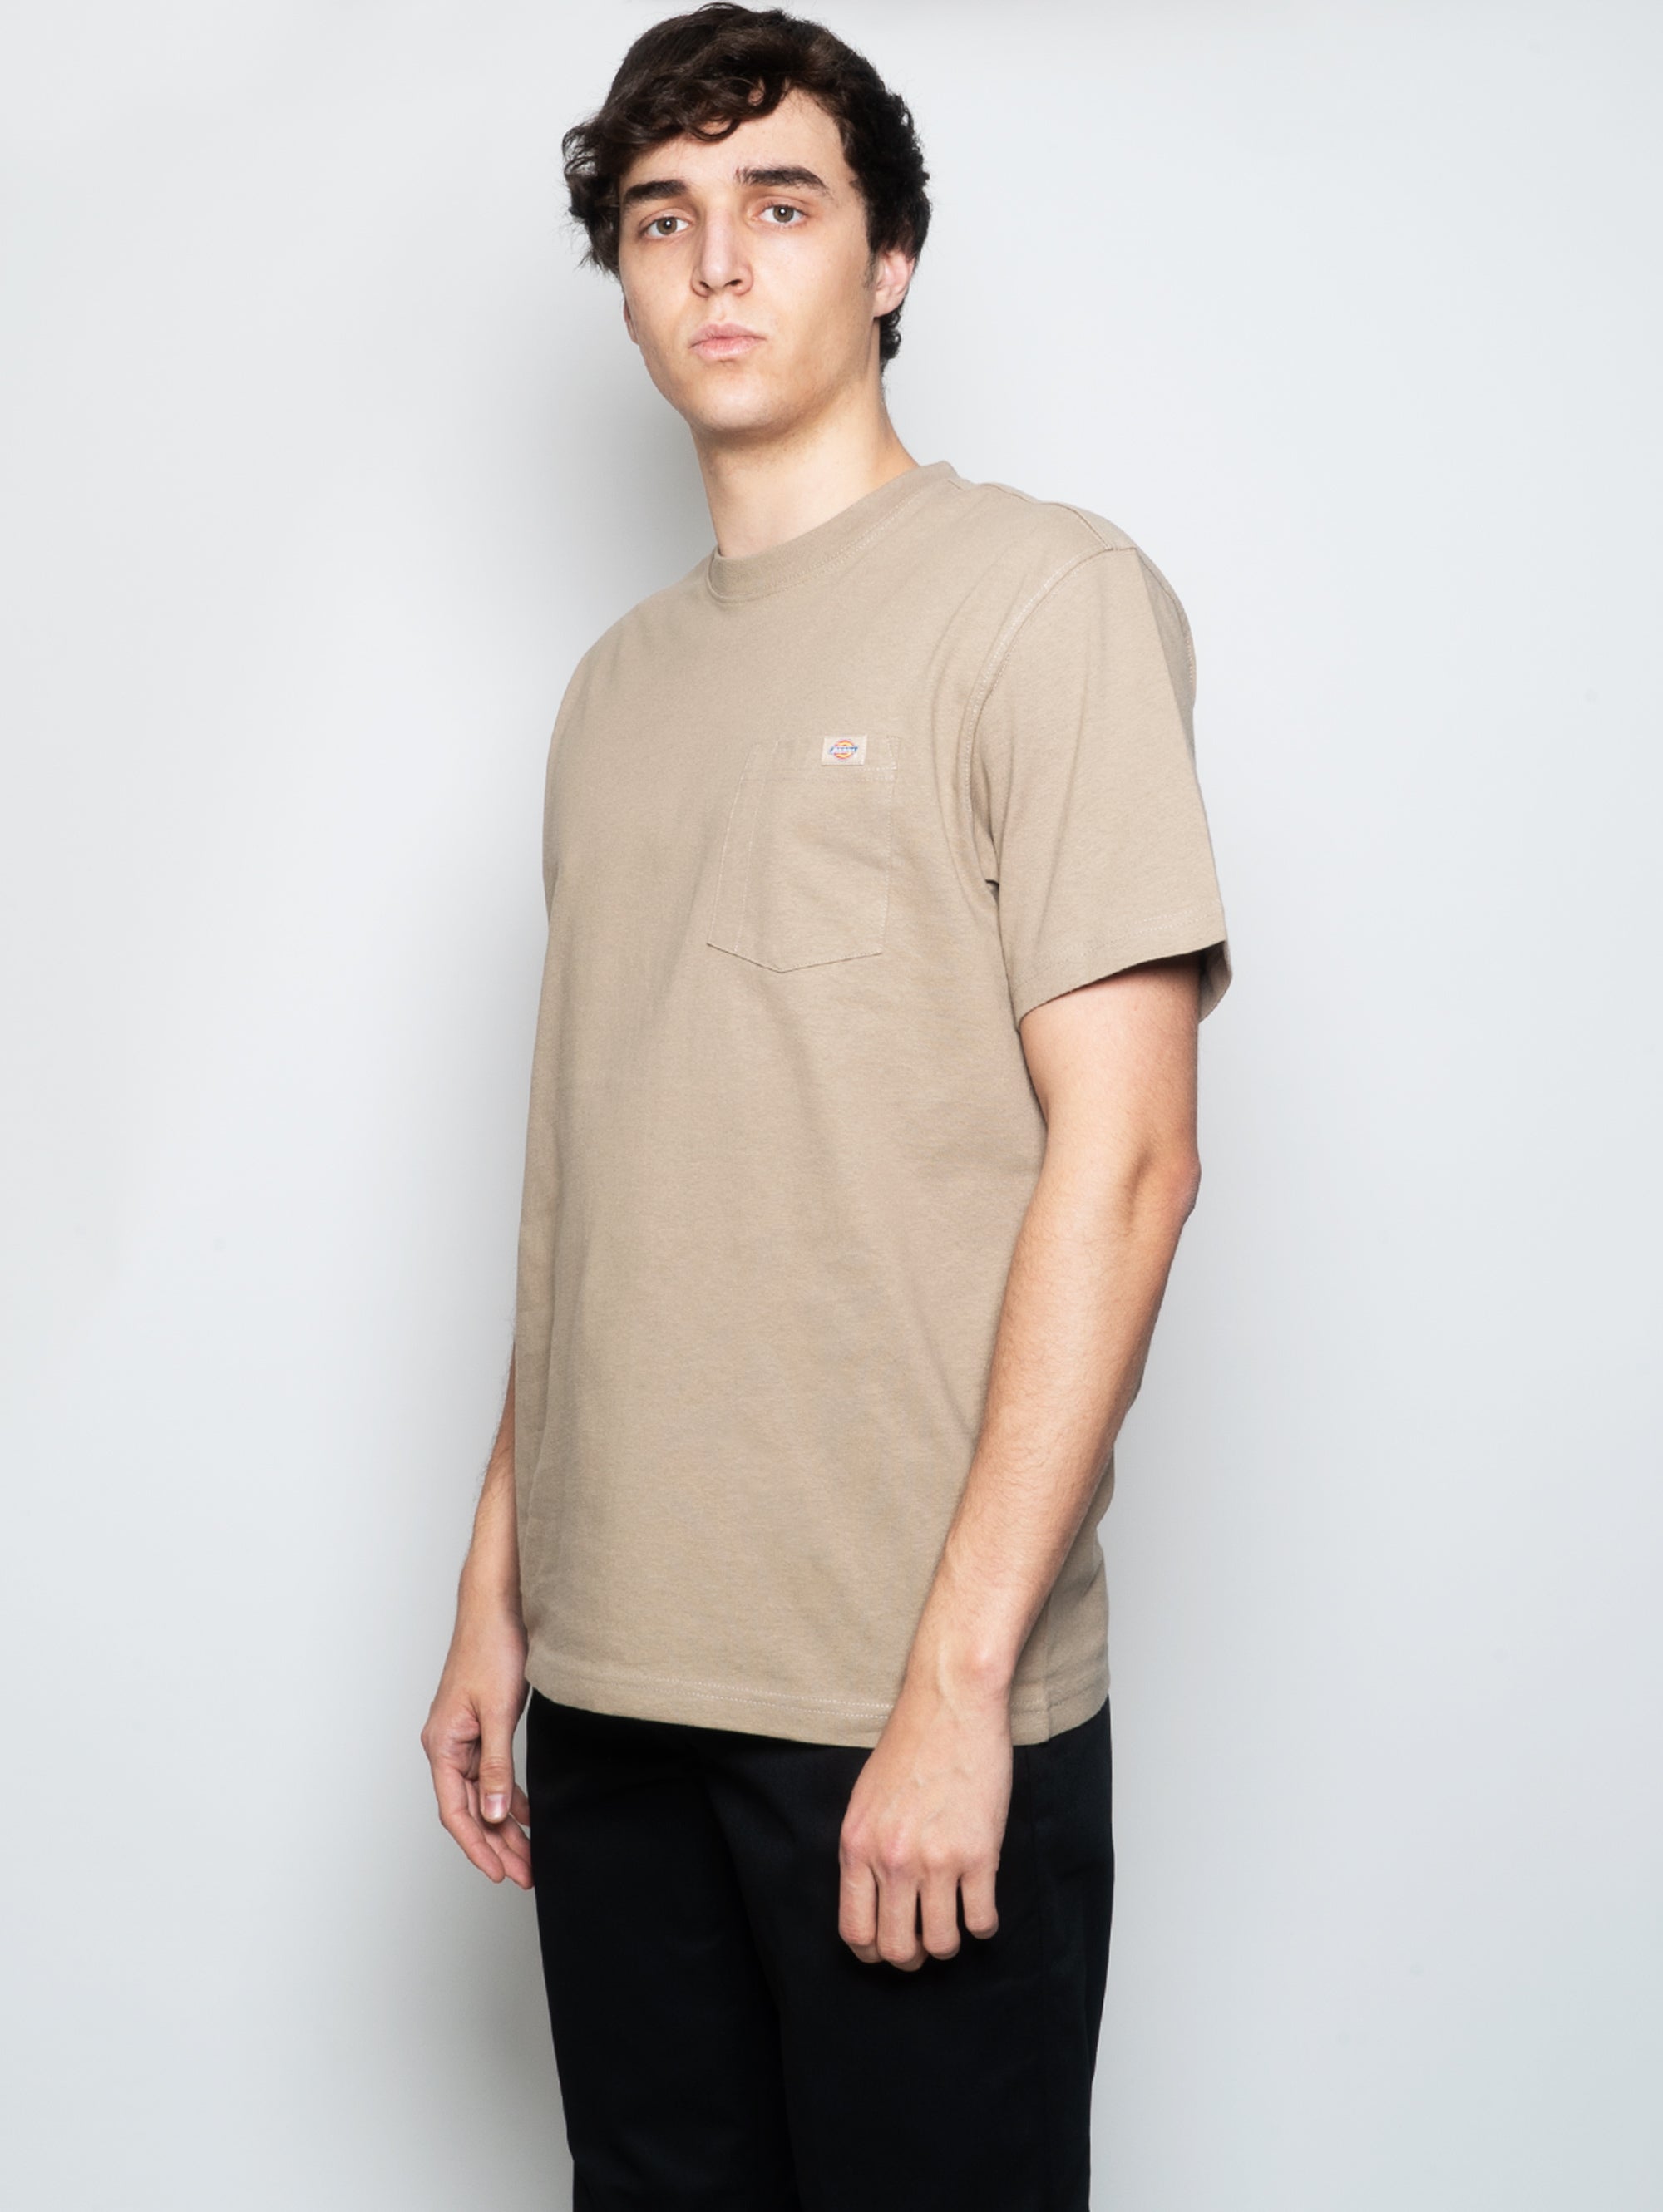 Sandfarbenes T-Shirt mit Tasche